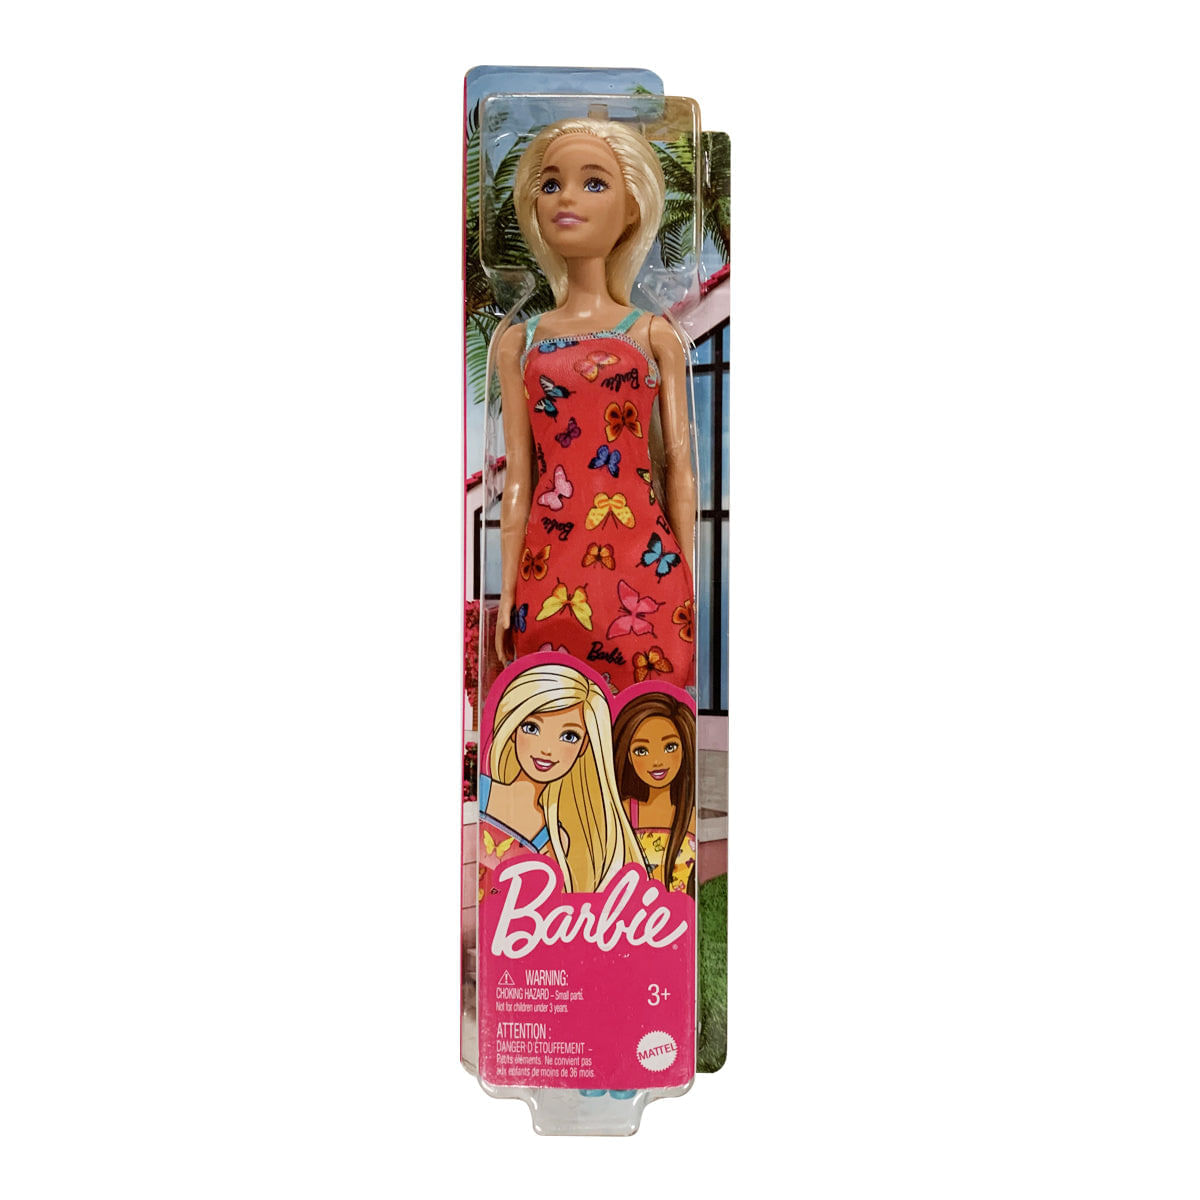 Roupa infantil rosa fashion para barbie, vestido para boneca